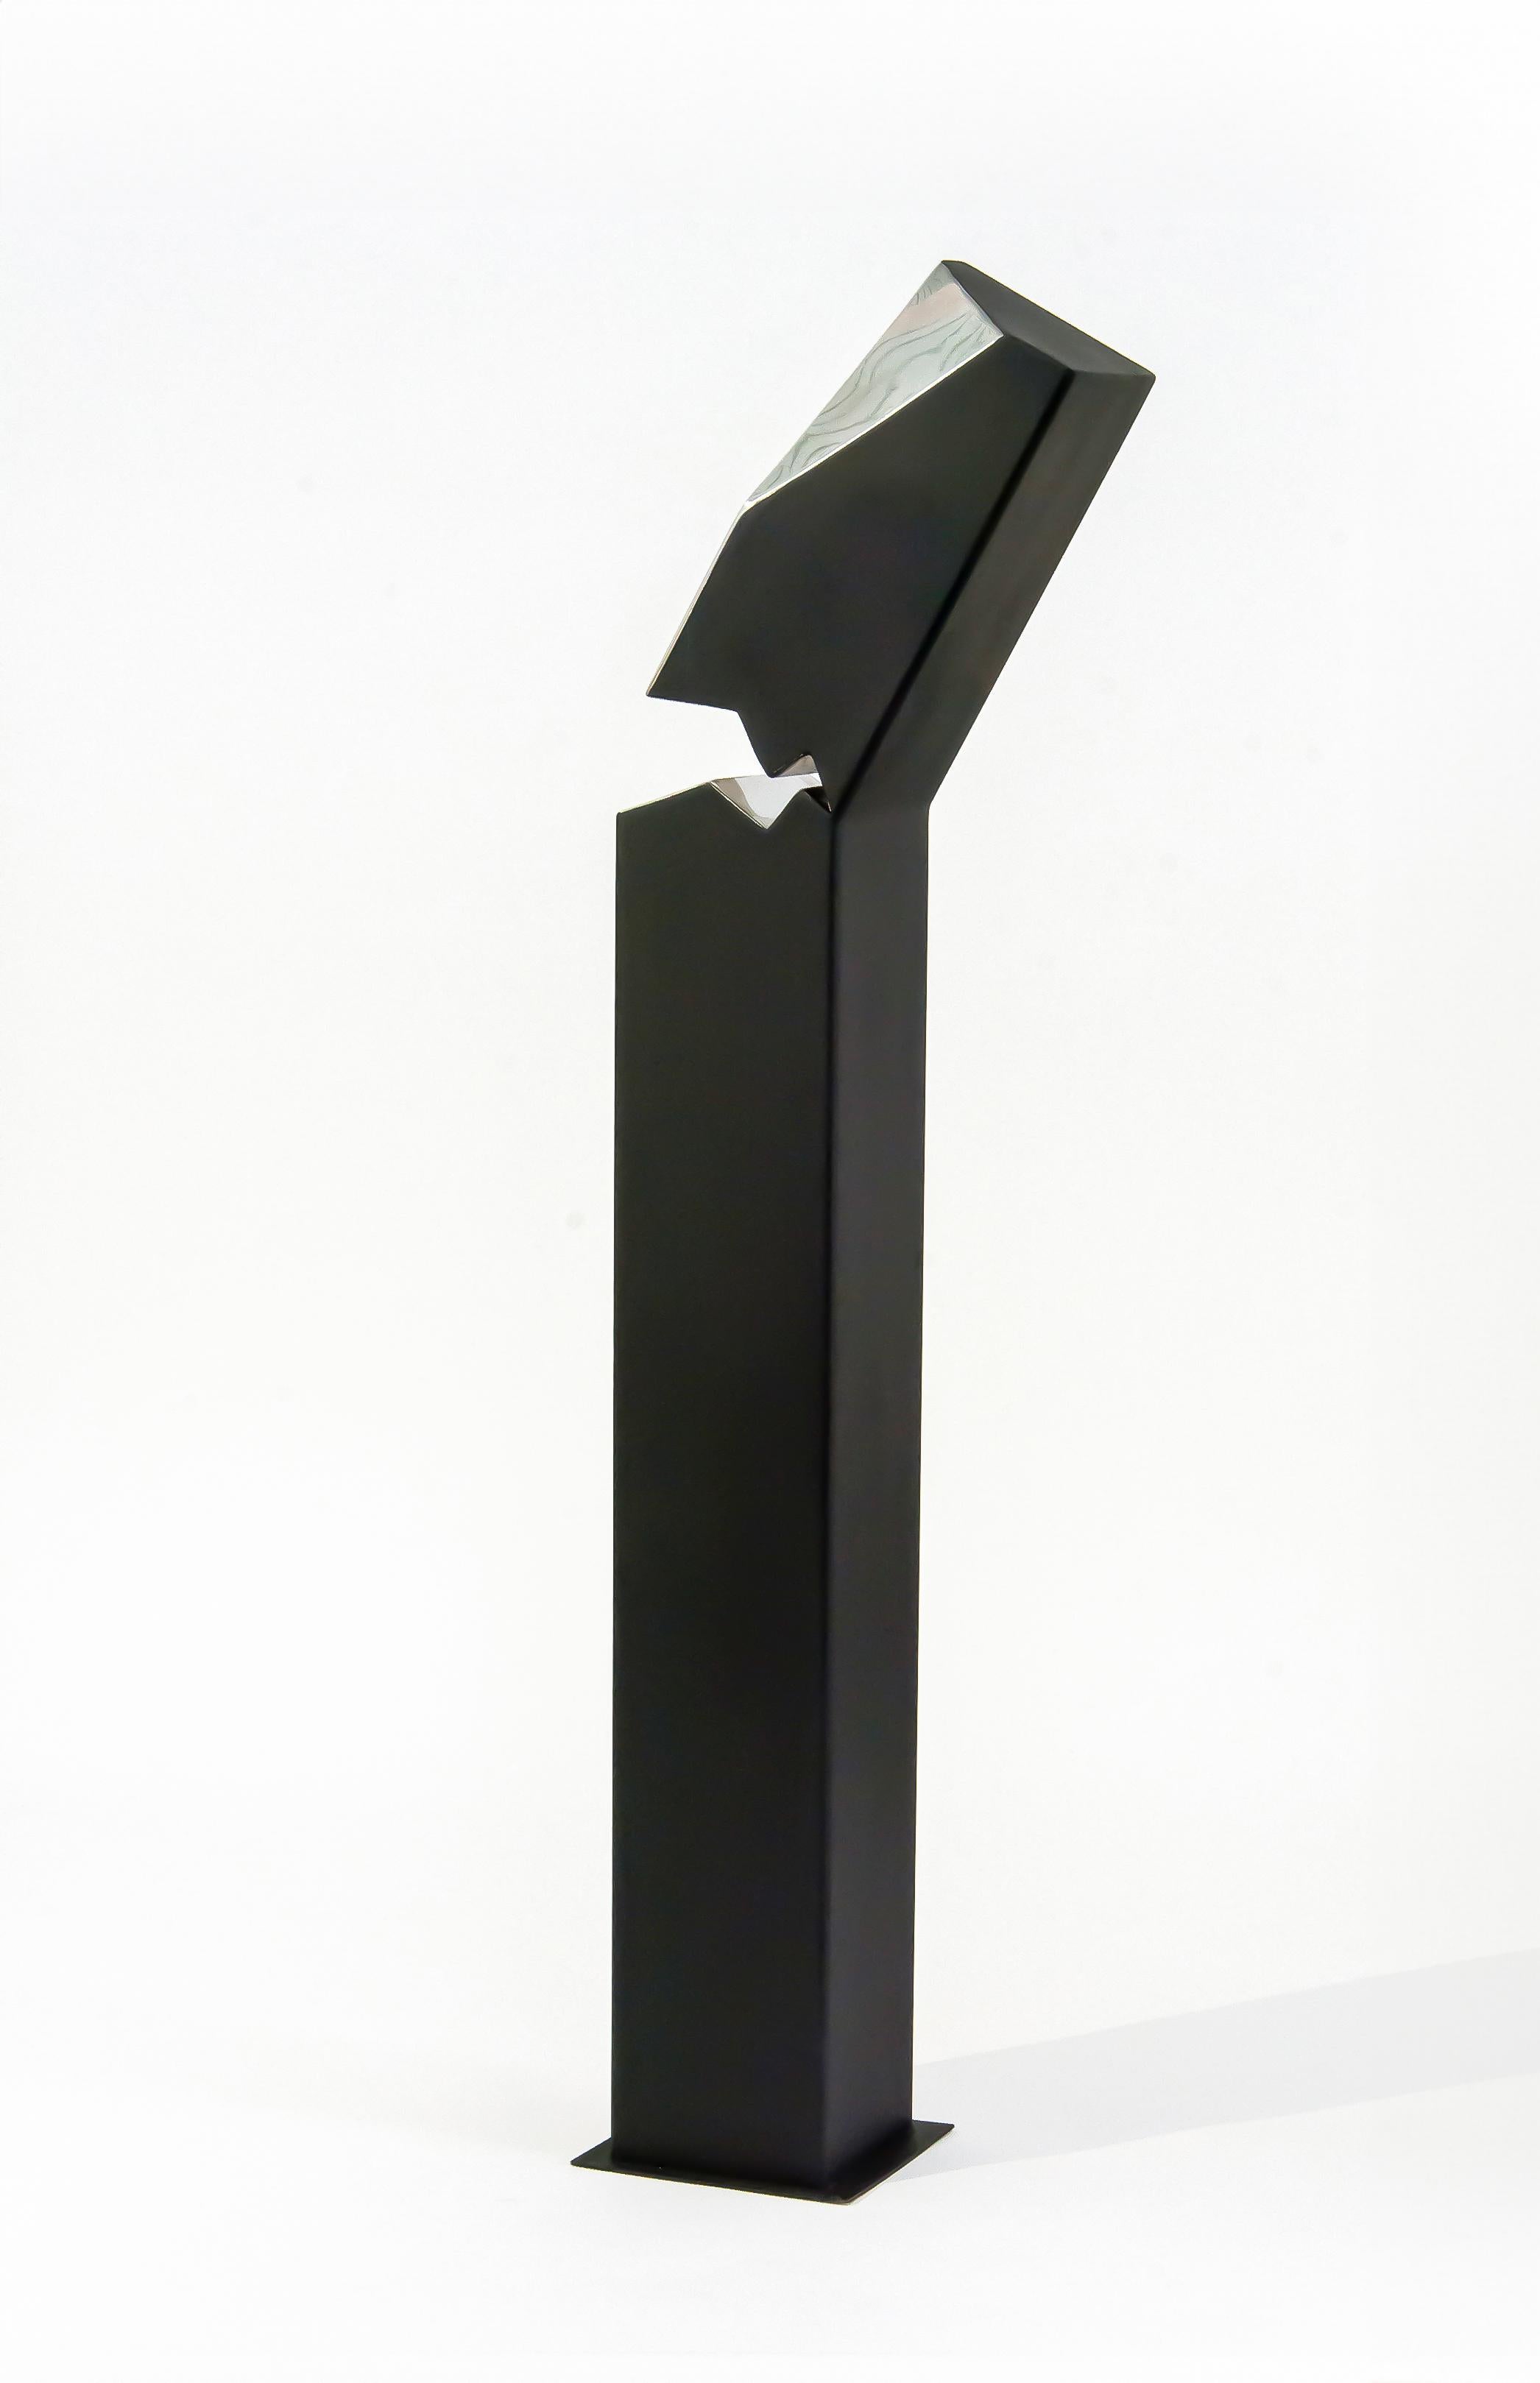 Athabasca Black 2/10- haut, moderne, géométrique, contemporain, sculpture en acier - Sculpture de Philippe Pallafray